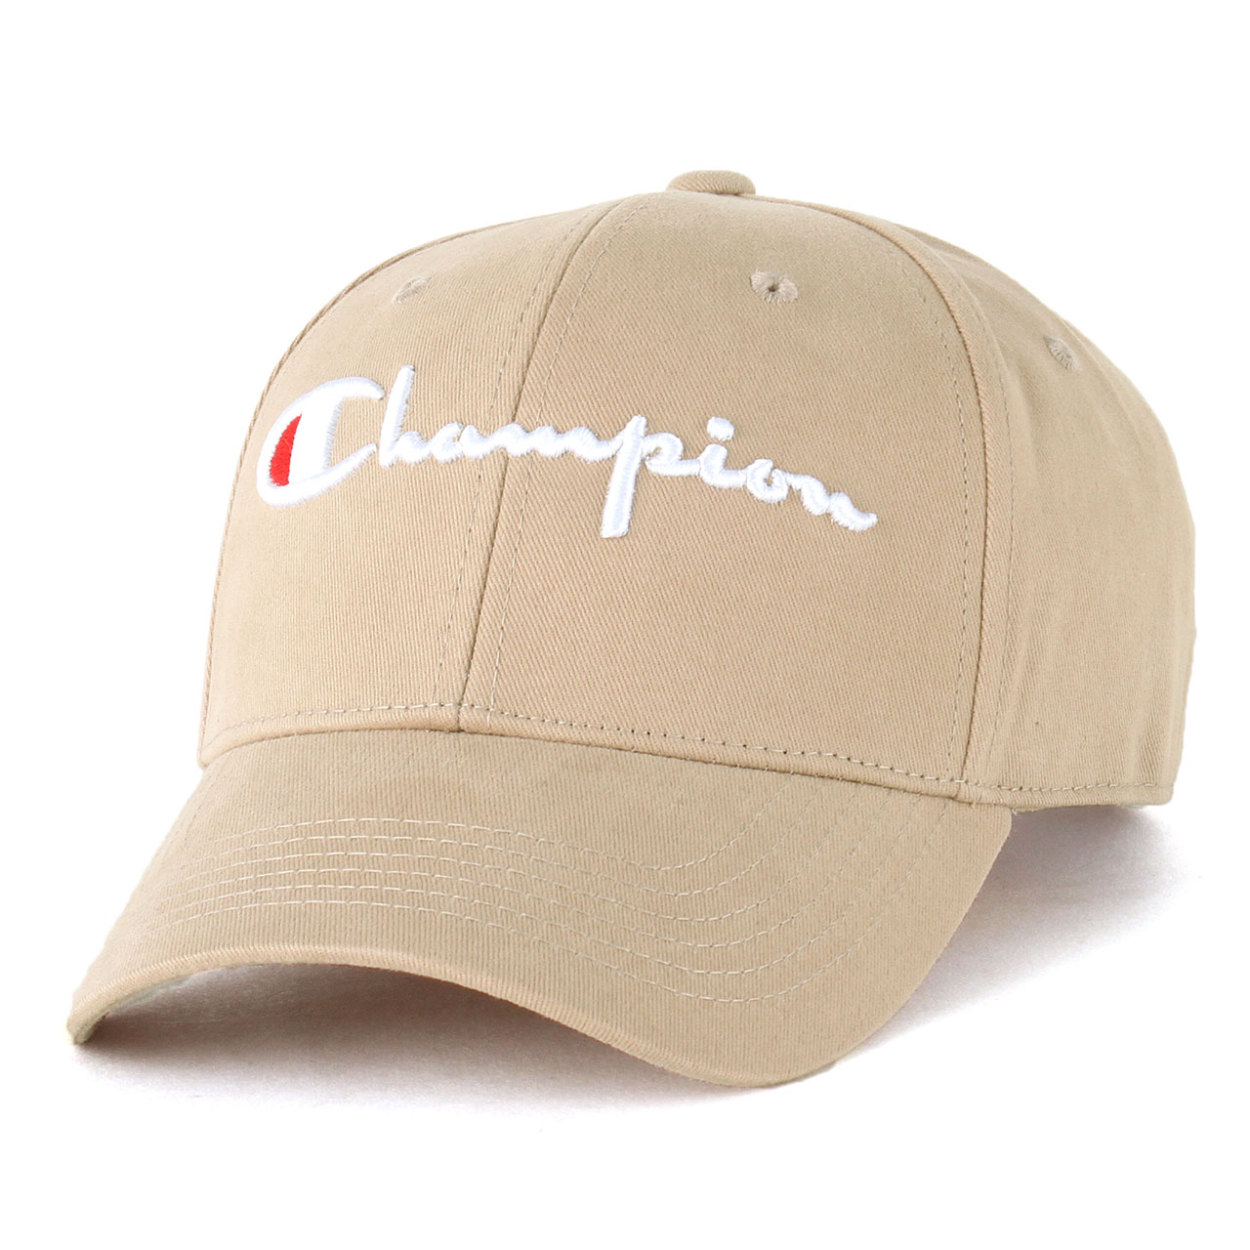 チャンピオン キャップ レディース メンズ ブランド 帽子 Usaモデル ブランド ロゴ アメカジ Champion H0543 Freshbox 通販 Yahoo ショッピング